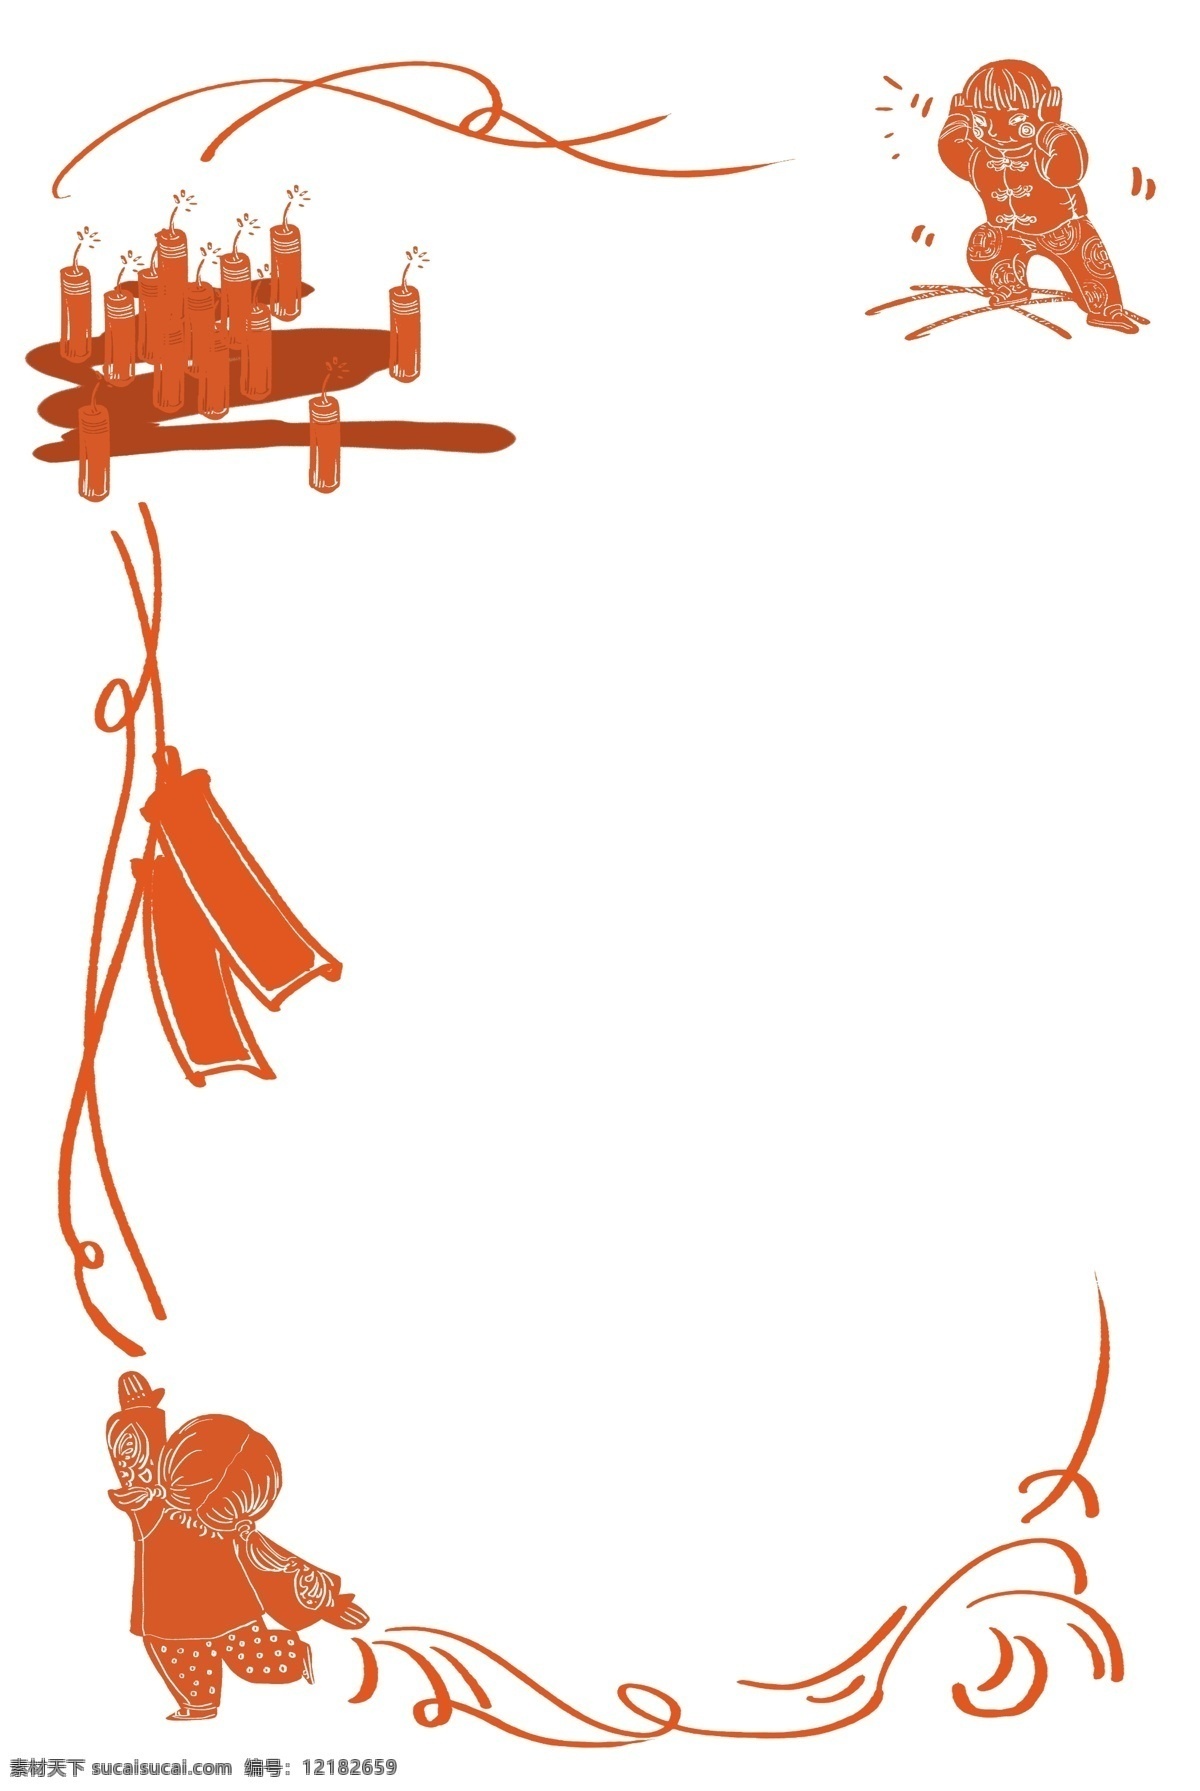 春节 过年 边框 装饰 海报 网页 海浪 精致 红色 爆竹 年年有余 剪纸 花边 手绘 吉祥 新春